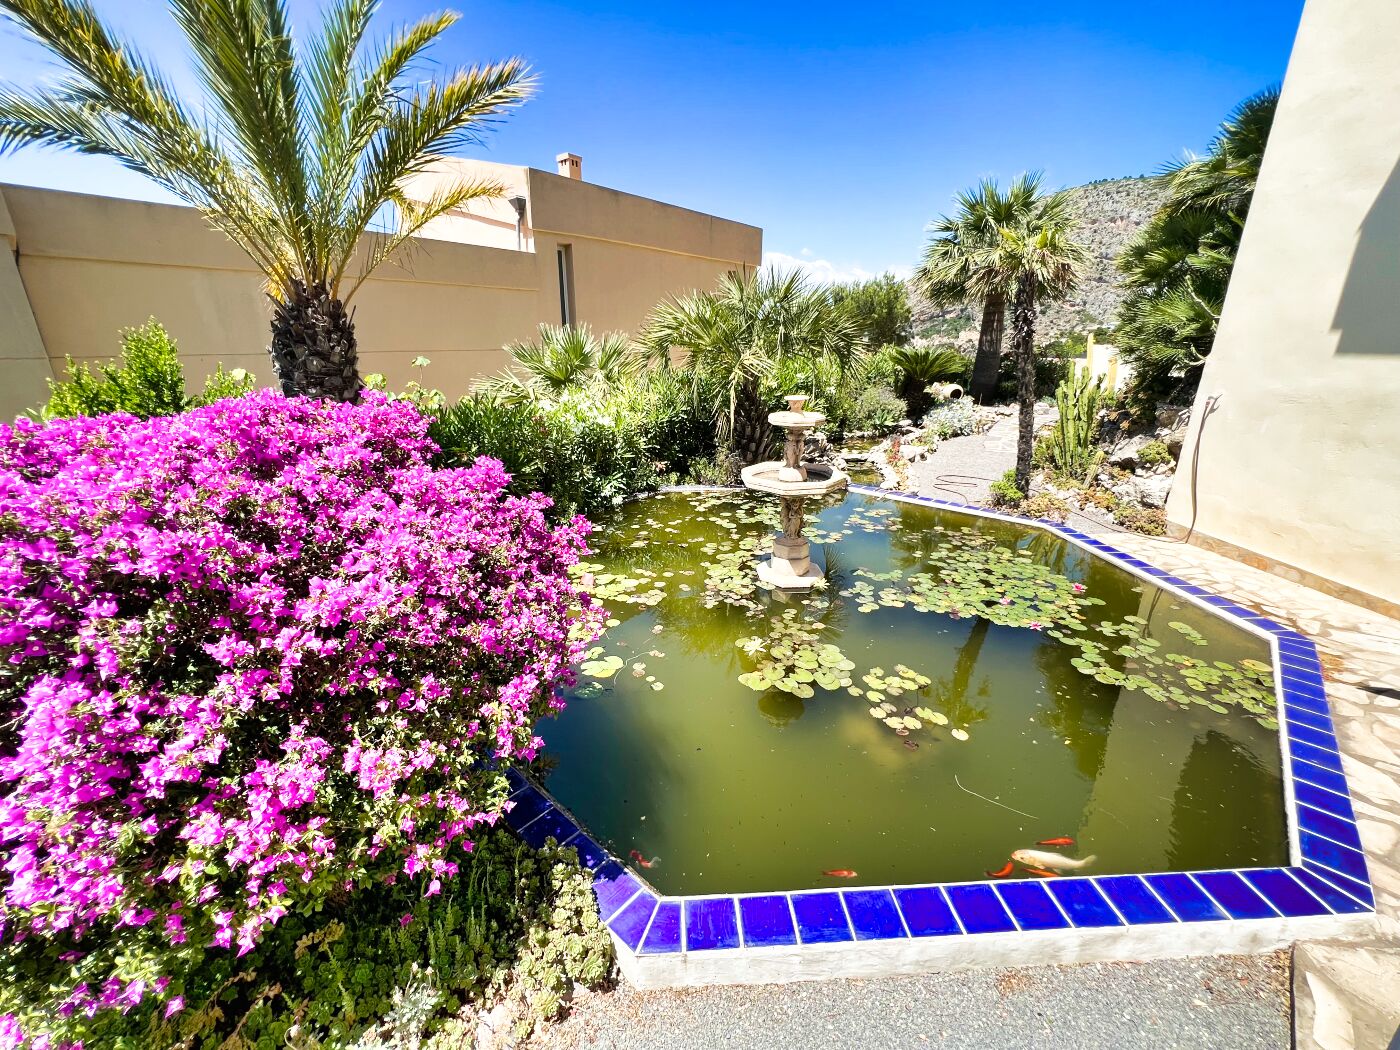 Villa mit schönem Garten und herrlichem Meerblick in Altea Hills!